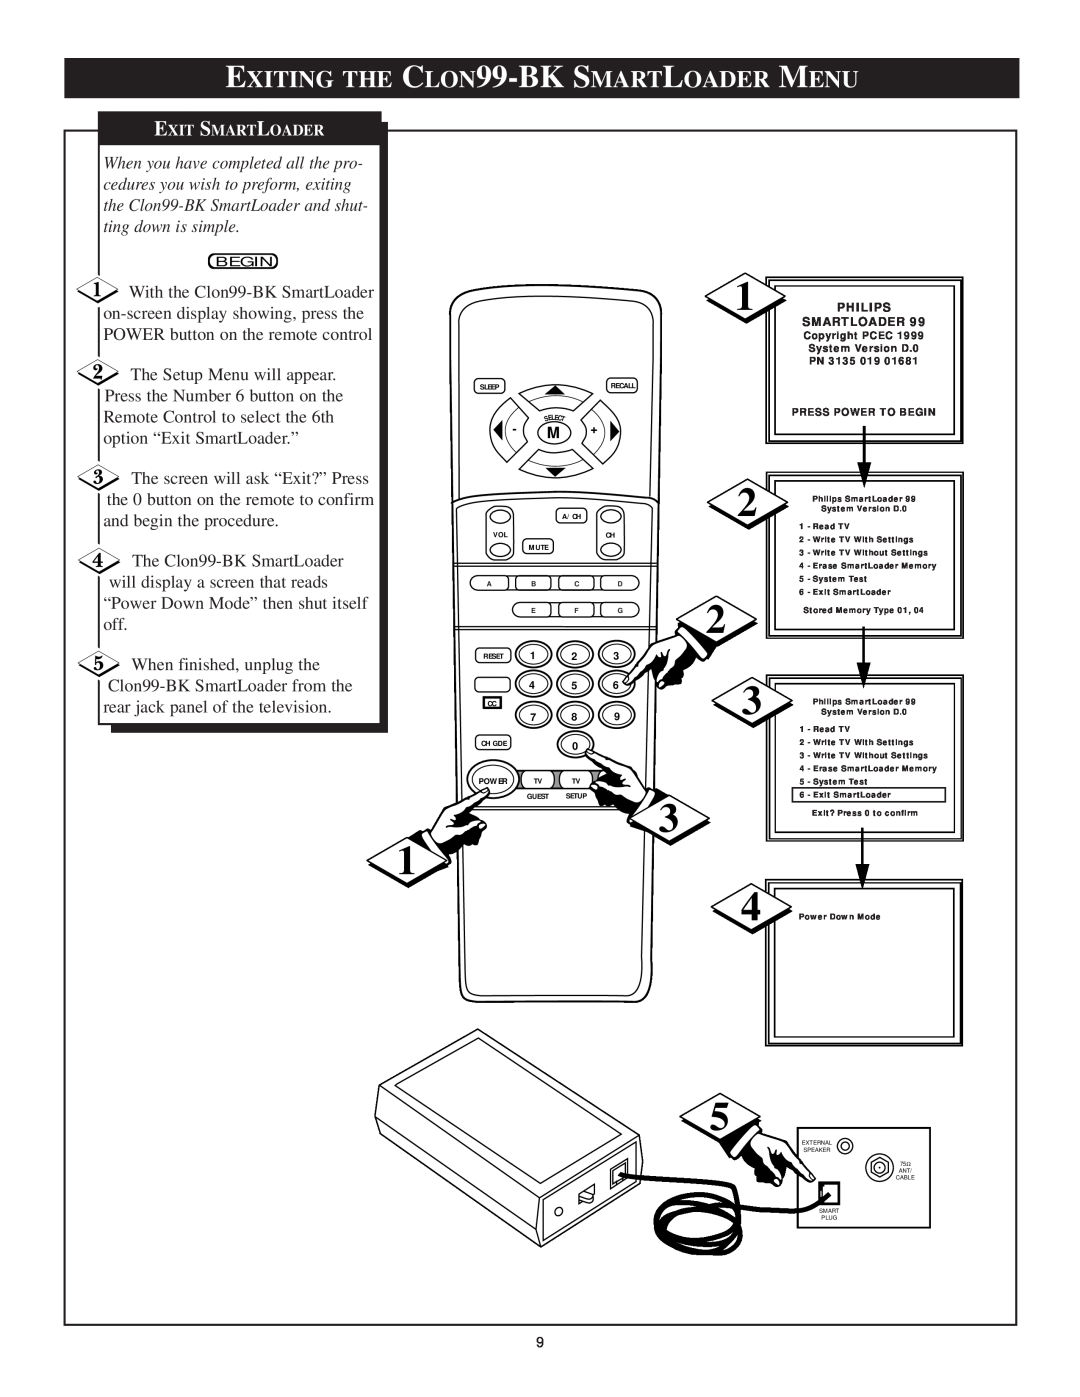 Philips Clon99-BKI manual EXITING THE CLON99-BK SMARTLOADER MENU, Exit Smartloader 